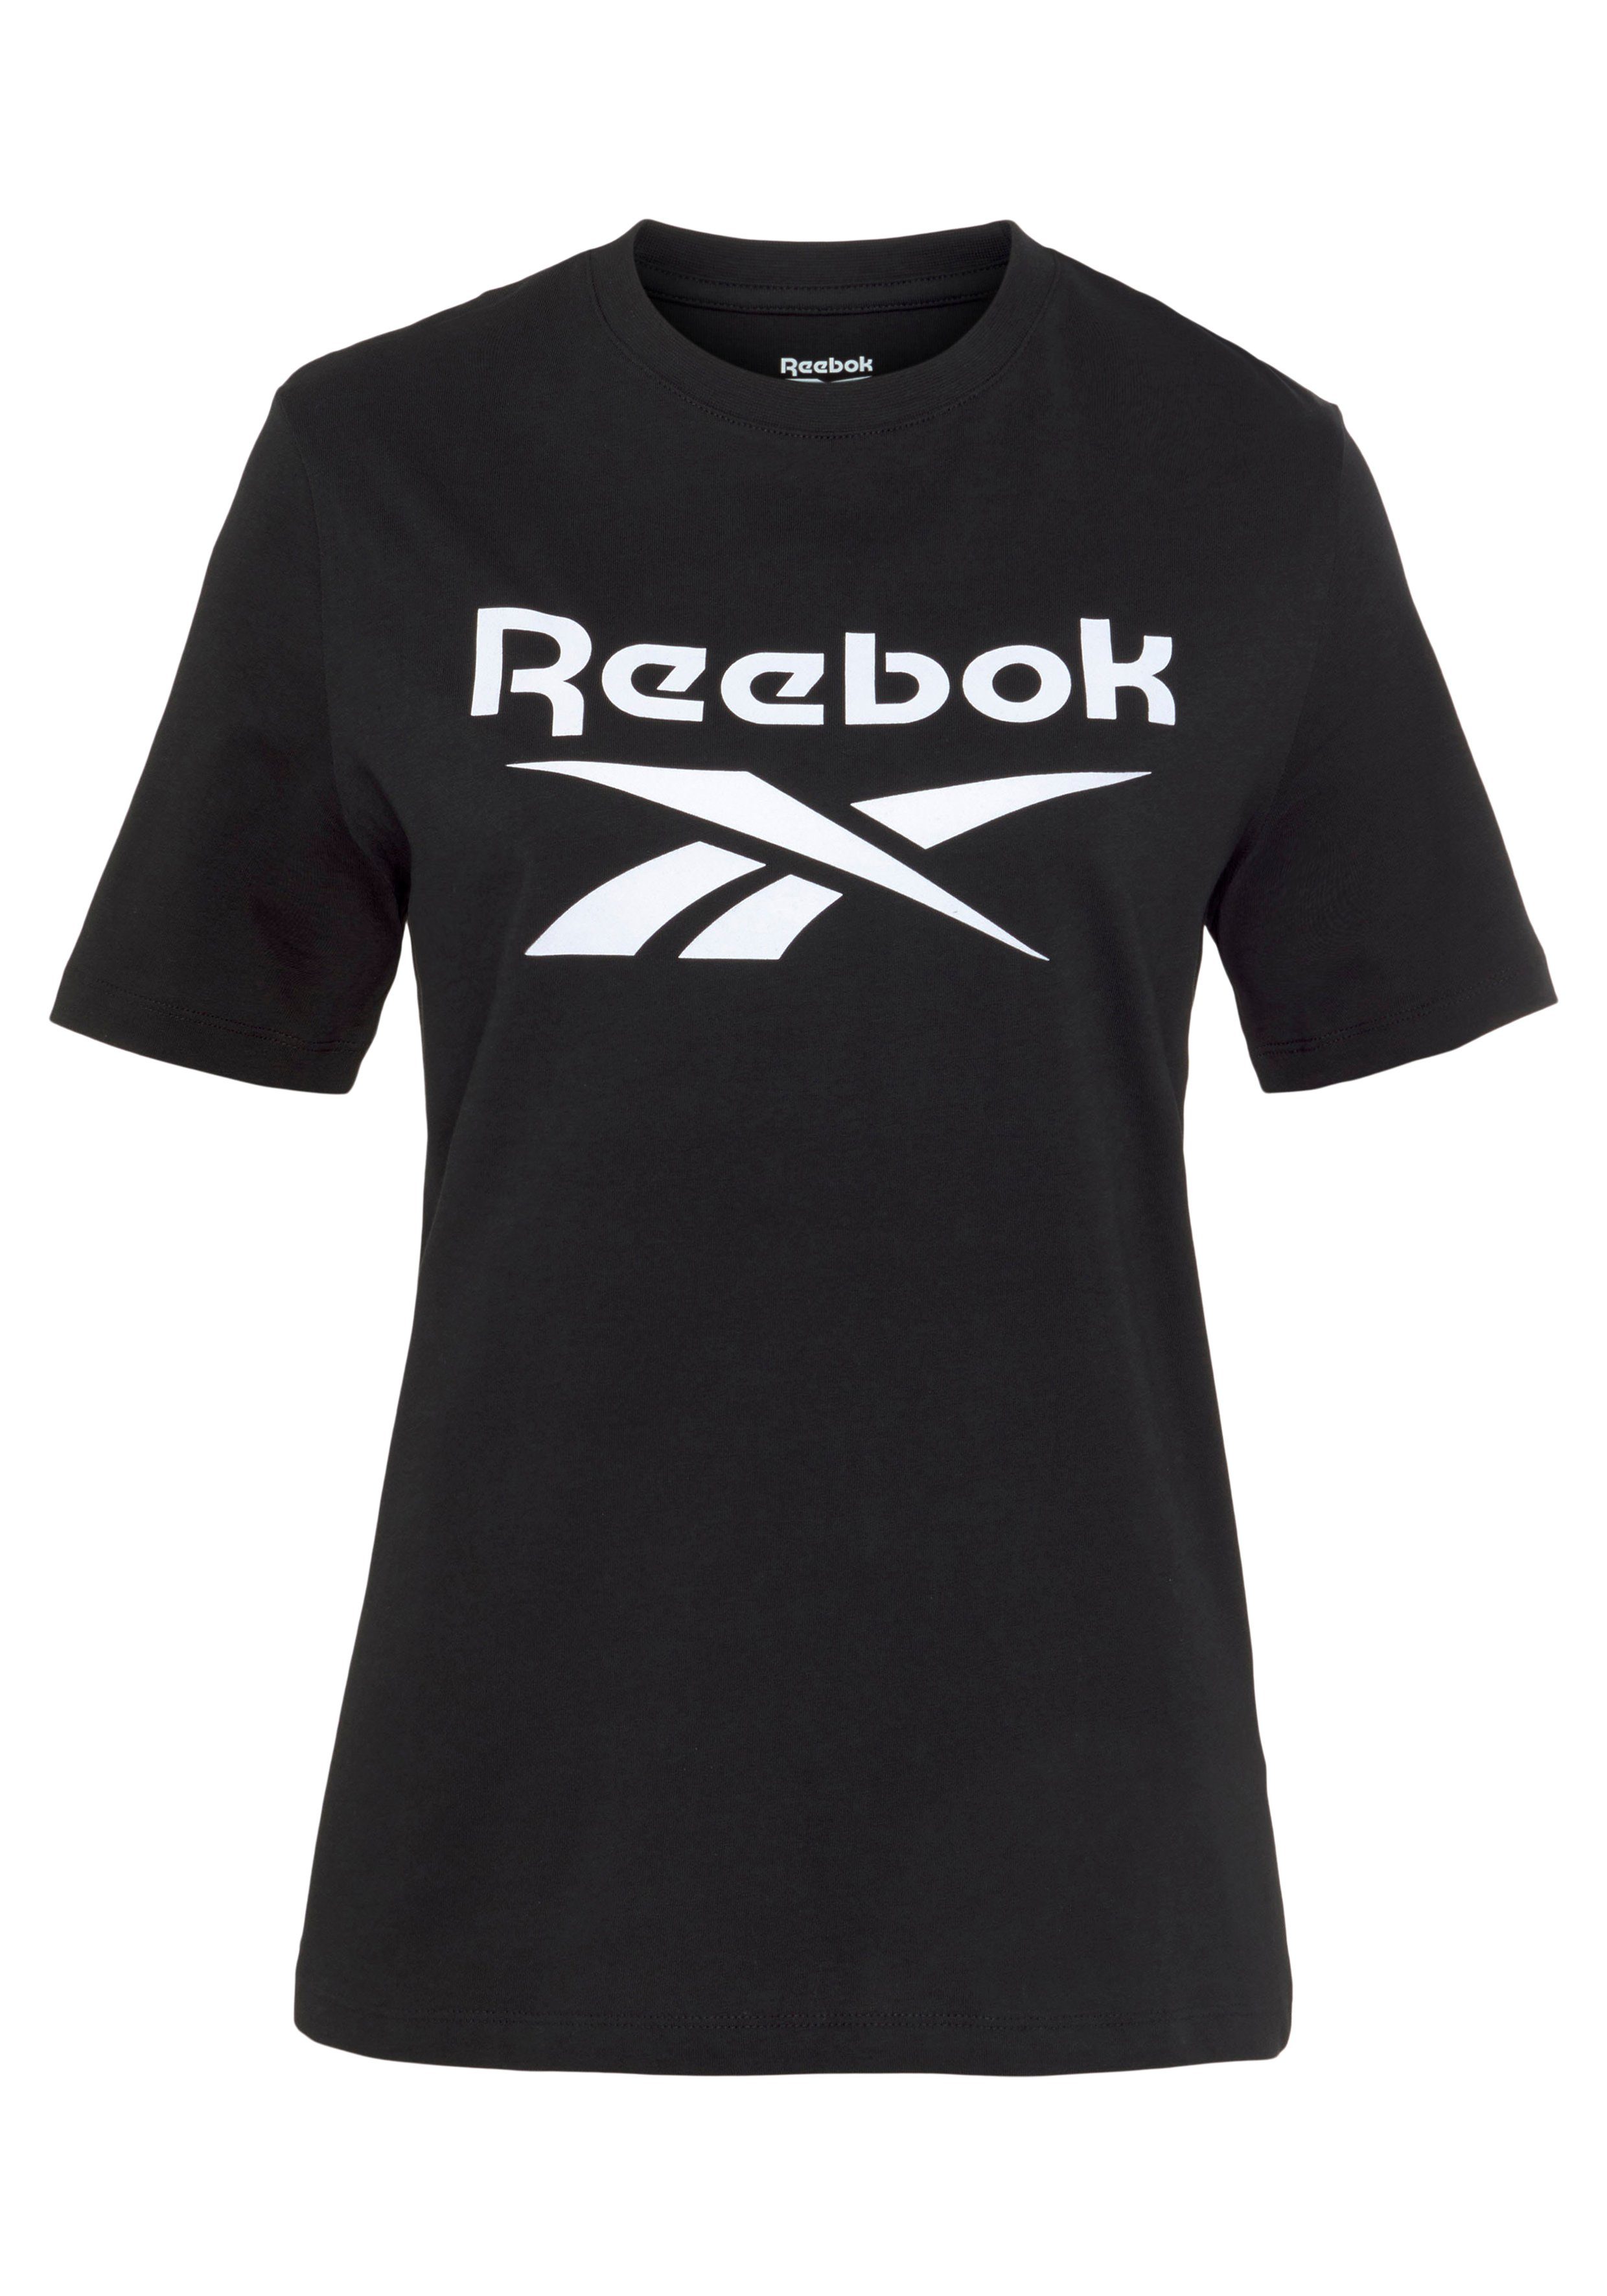 Reebok T-Shirt Tee BL black RI